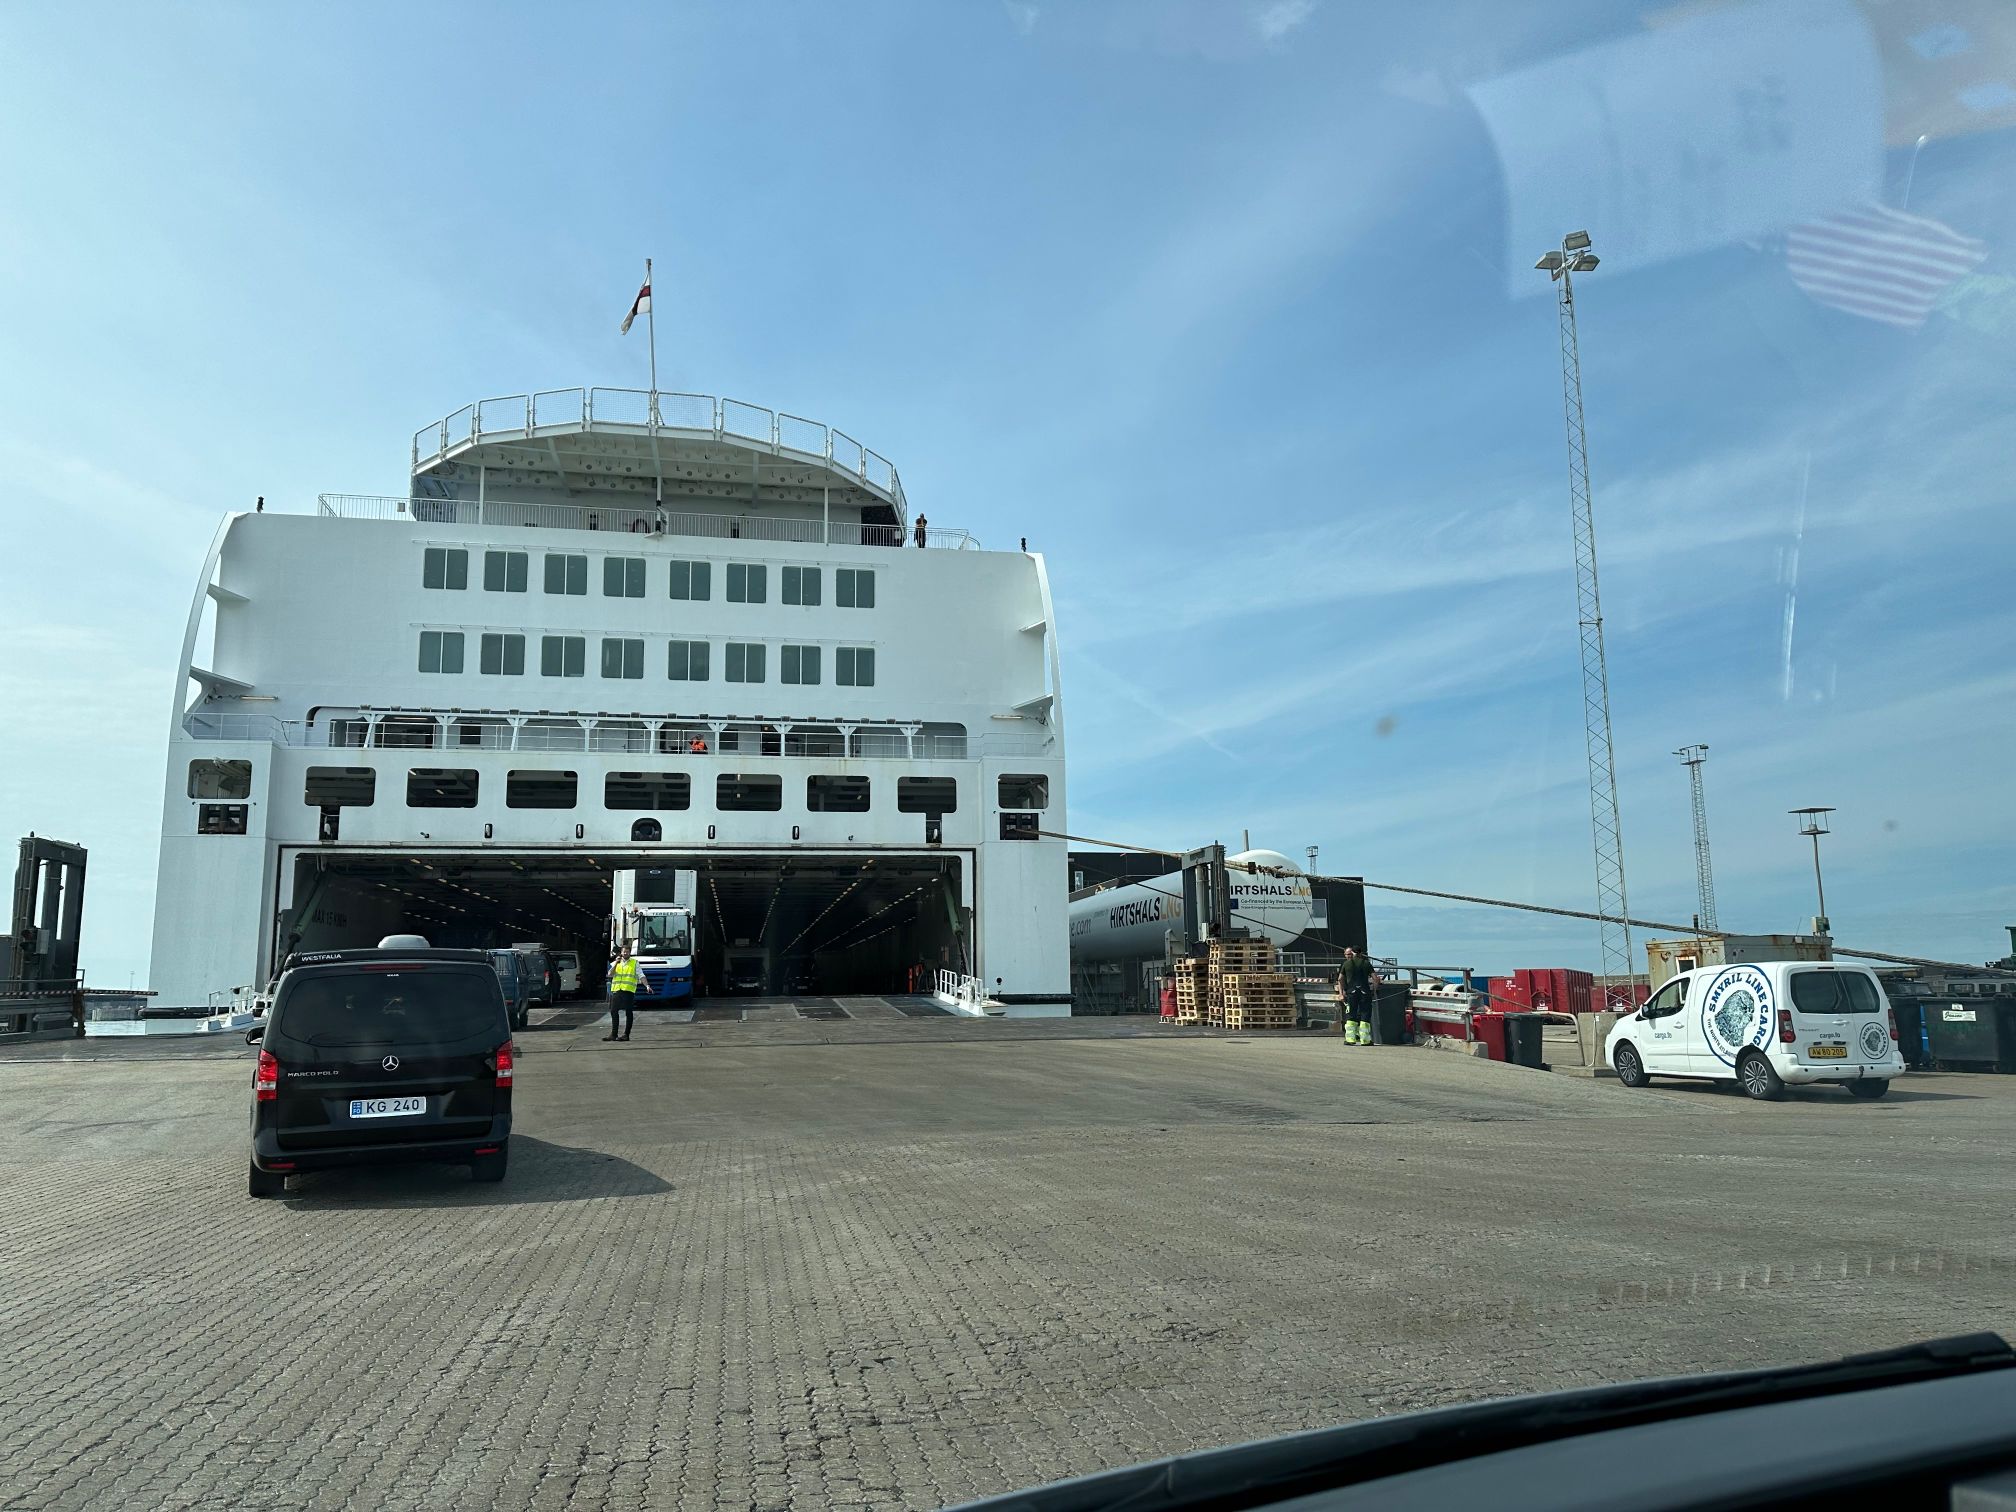 ferry-Iceland-Denmark-parkeer dek